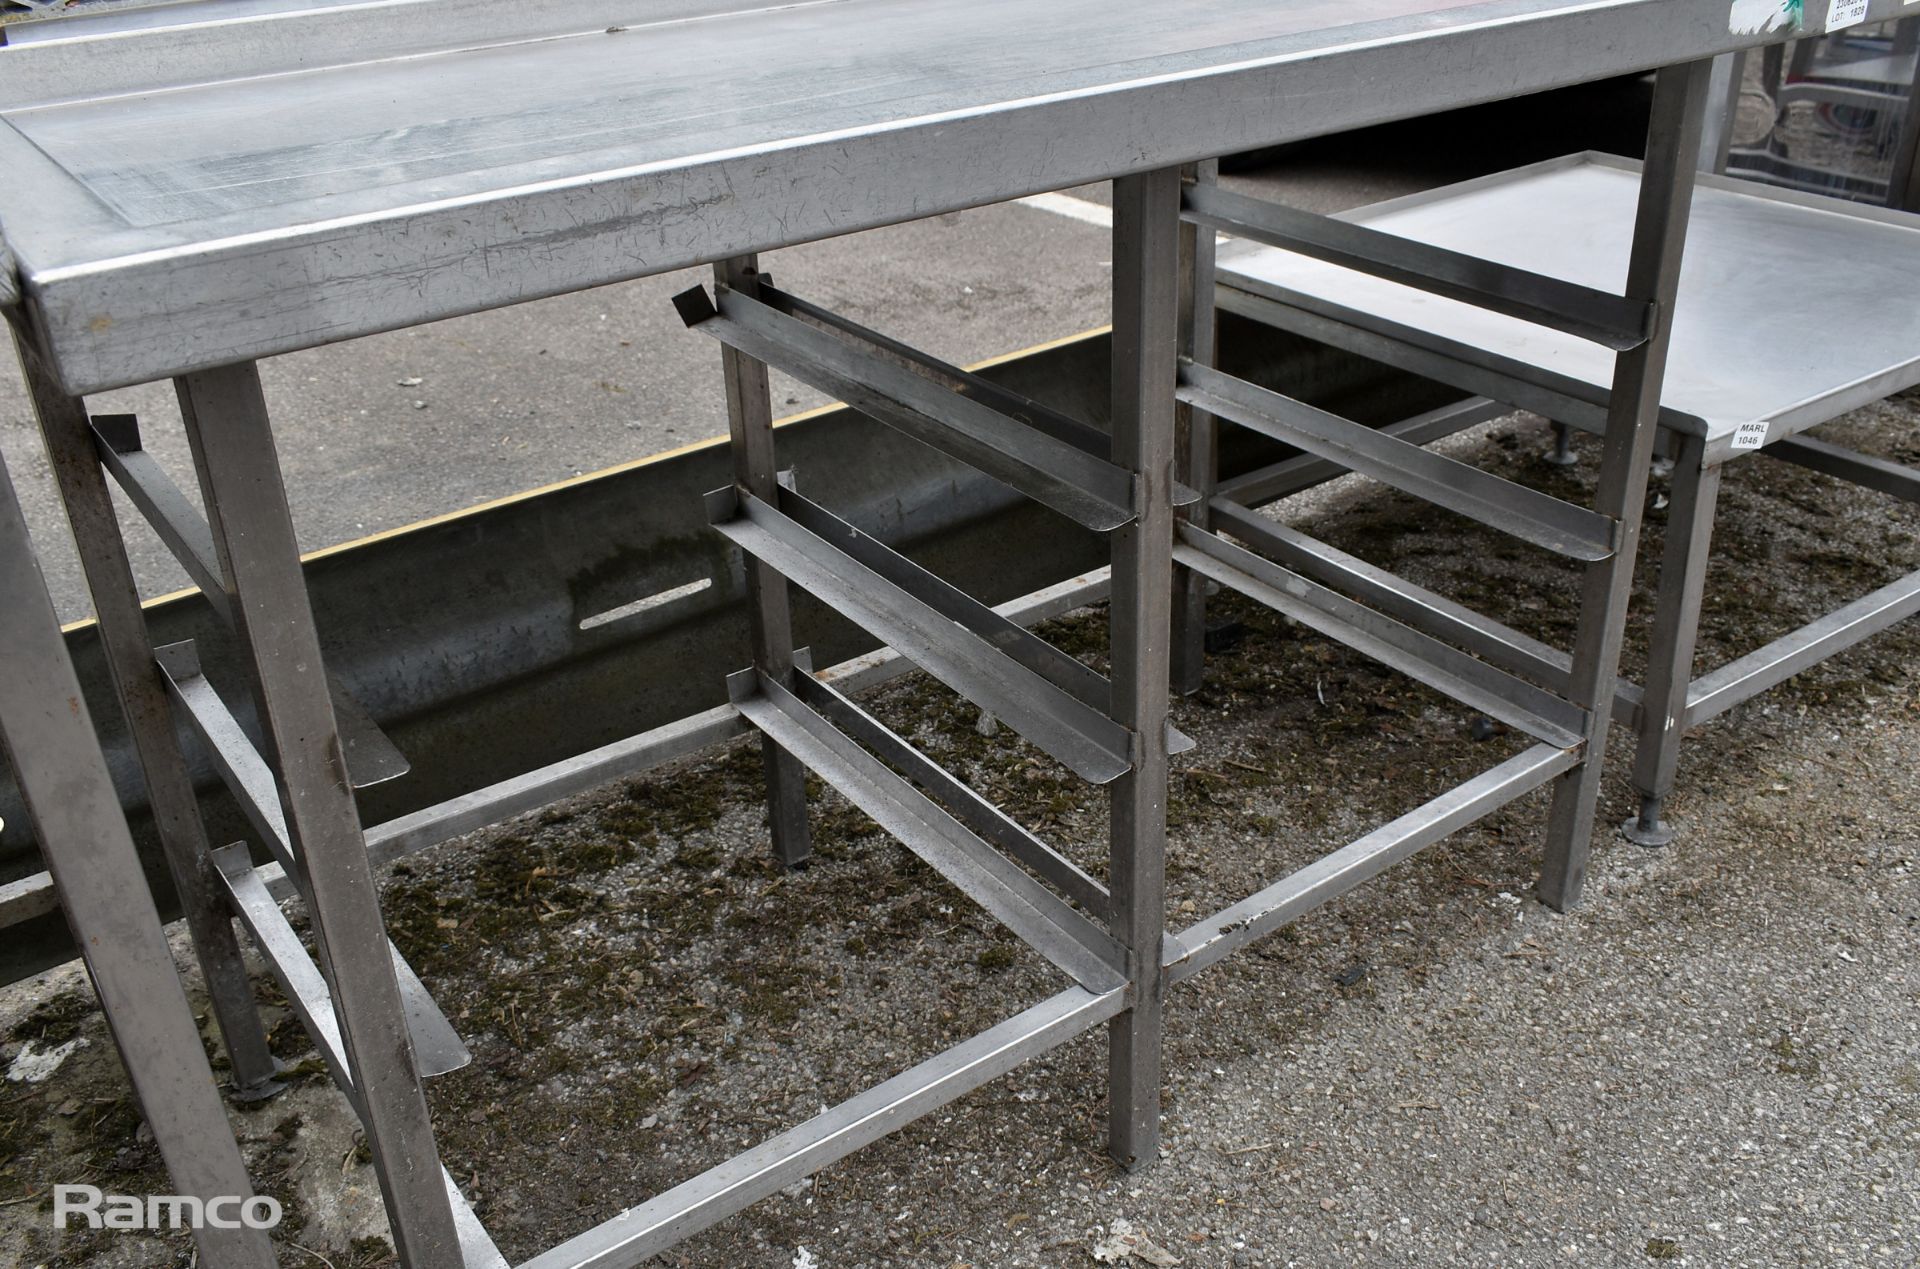 Stainless steel dishwasher run off table - 1400 x 850 x 900mm - Bild 3 aus 3